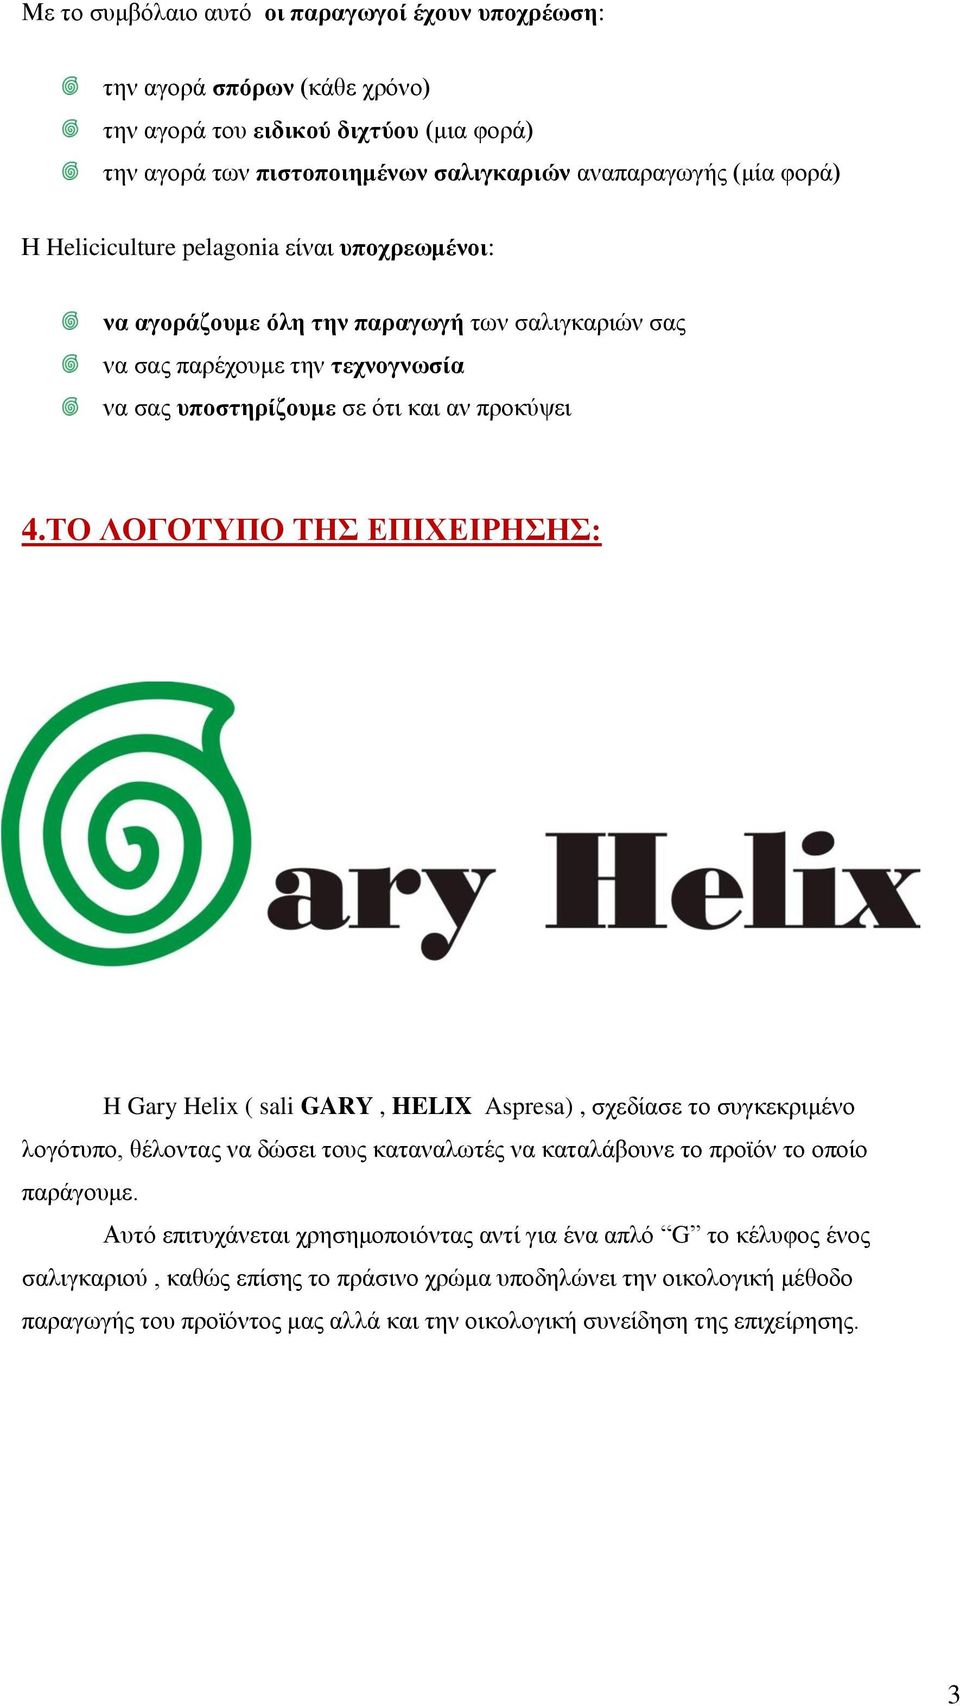 ΤΟ ΛΟΓΟΤΥΠΟ ΤΗΣ ΕΠΙΧΕΙΡΗΣΗΣ: H Gary Helix ( sali GARY, HELIX Aspresa), σχεδίασε το συγκεκριμένο λογότυπο, θέλοντας να δώσει τους καταναλωτές να καταλάβουνε το προϊόν το οποίο παράγουμε.